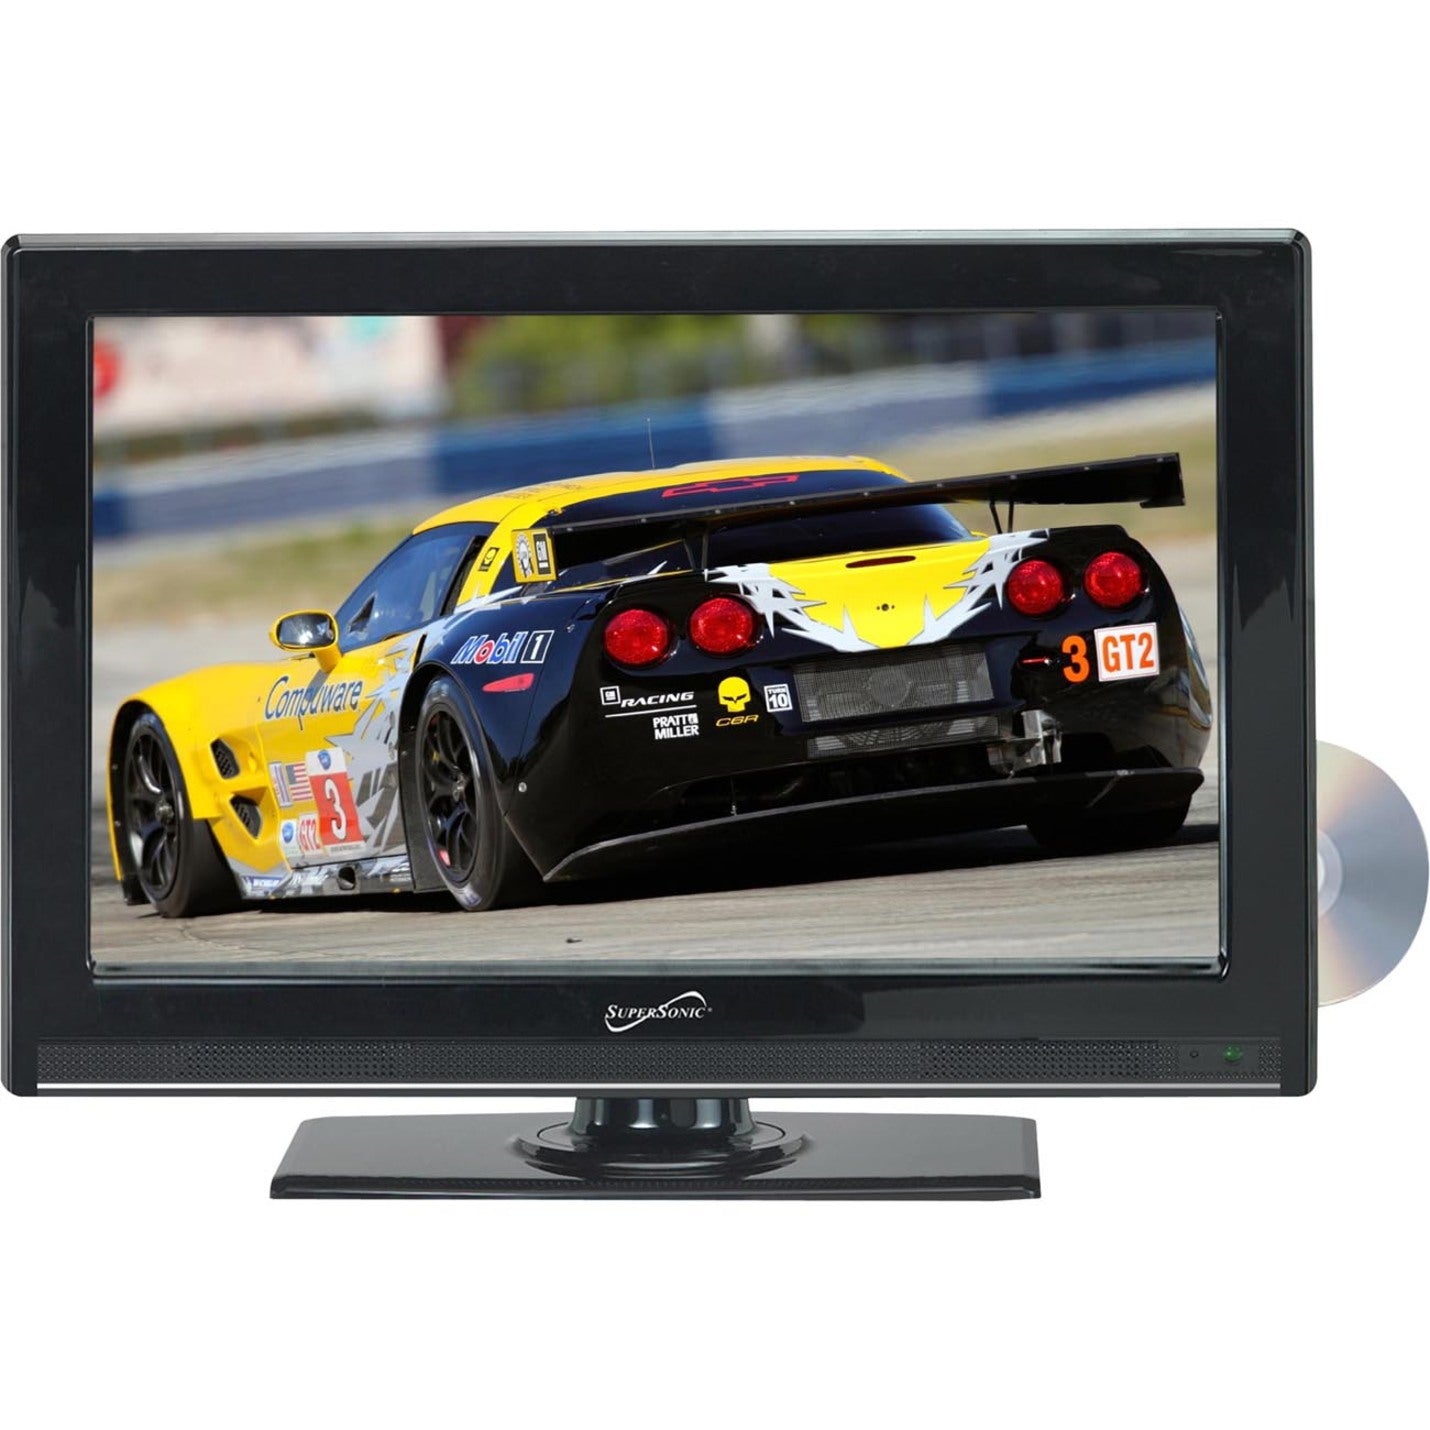 Supersonic SC-2412 24" Breitbild-LED-HD-Fernseher mit DVD-Player 1080p ATSC Digital Tuner Autokabel Fernbedienung